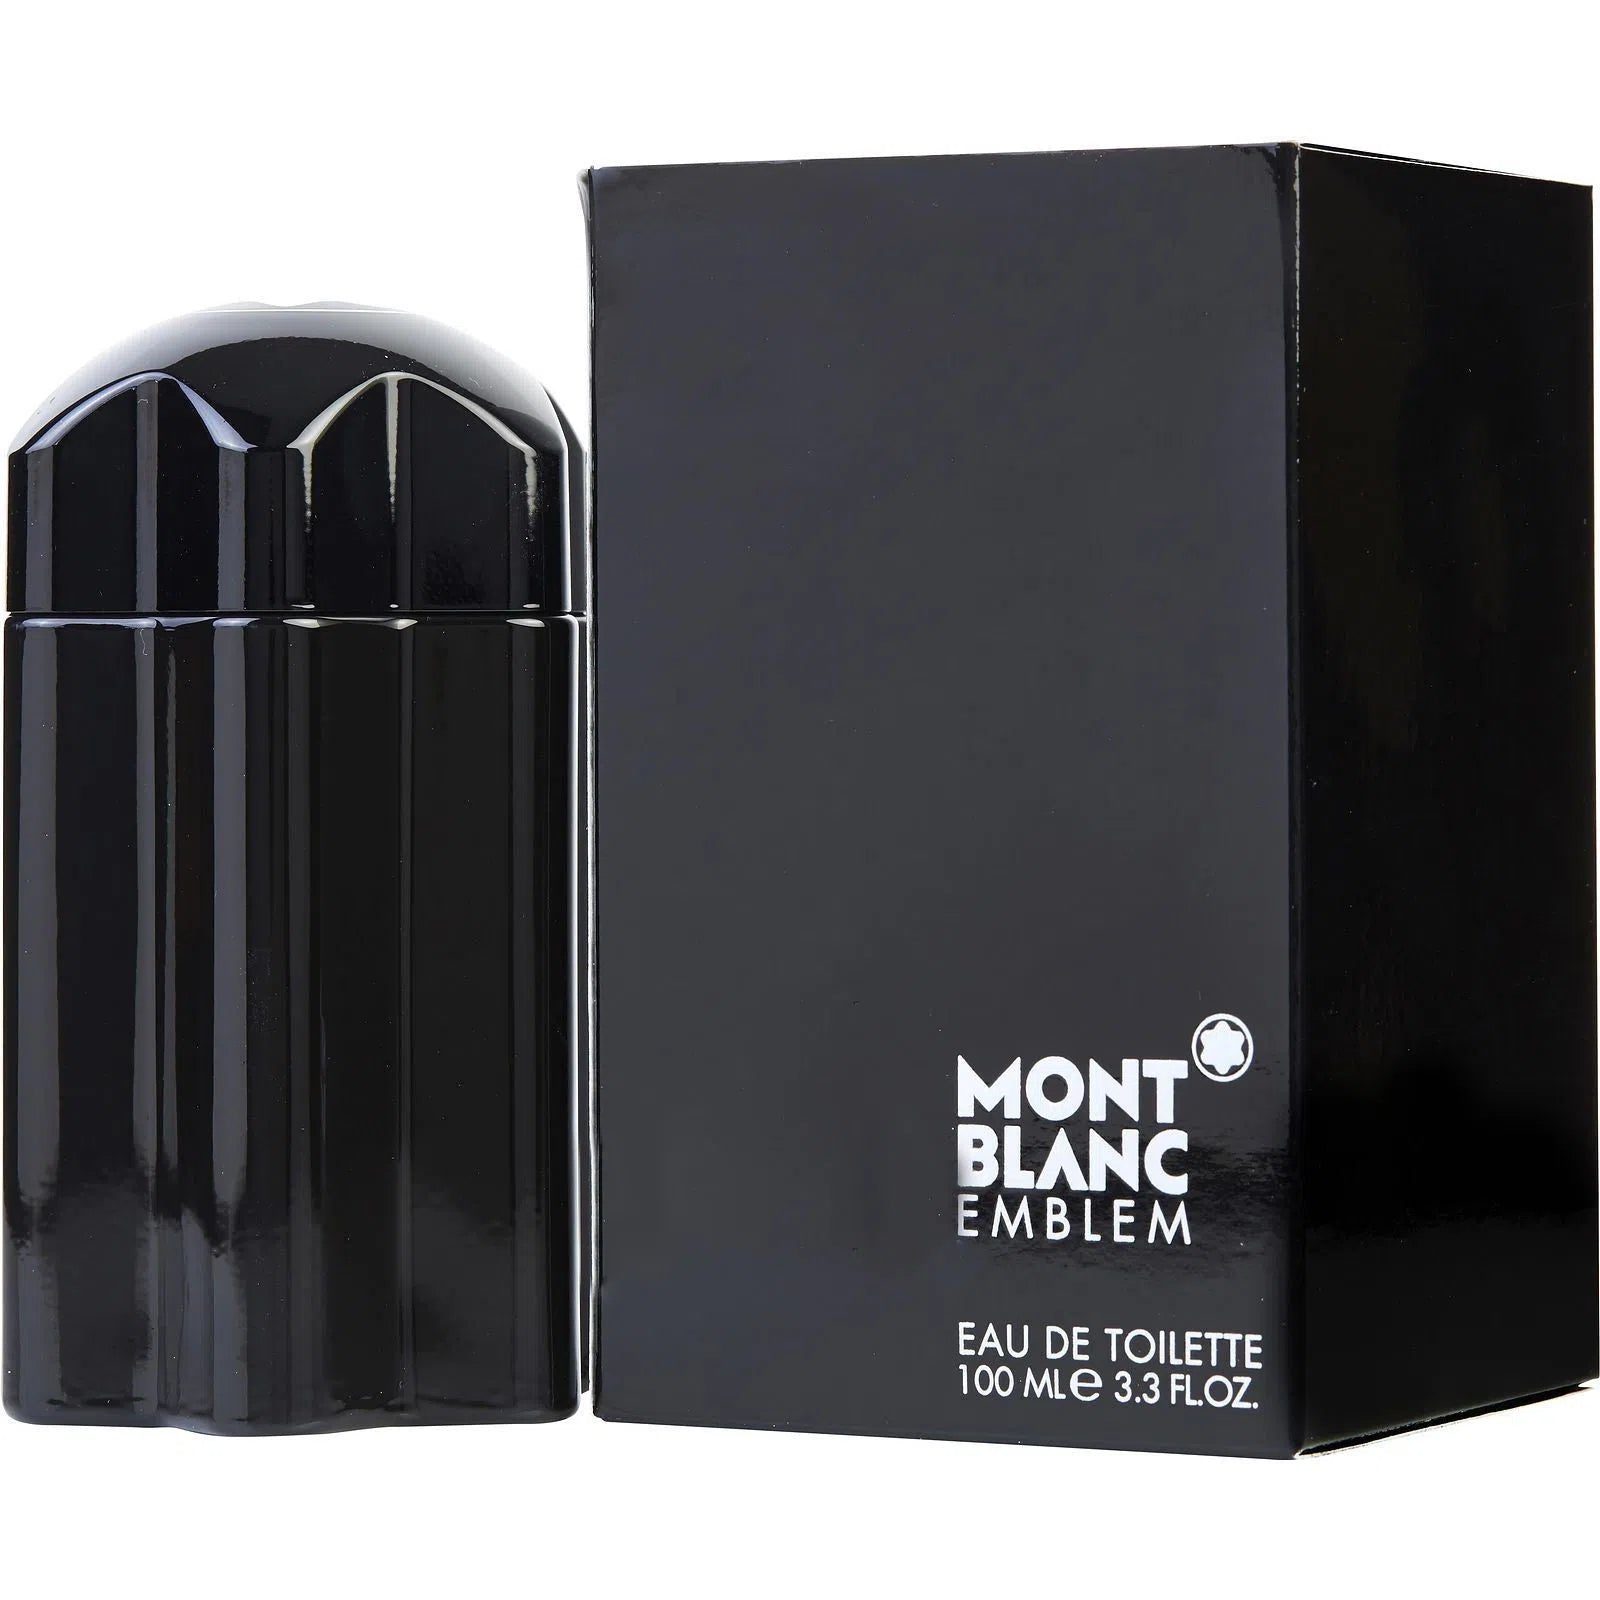 Perfume Mont Blanc Emblem EDT (M) / 100 ml - 3386460058728- Prive Perfumes Honduras